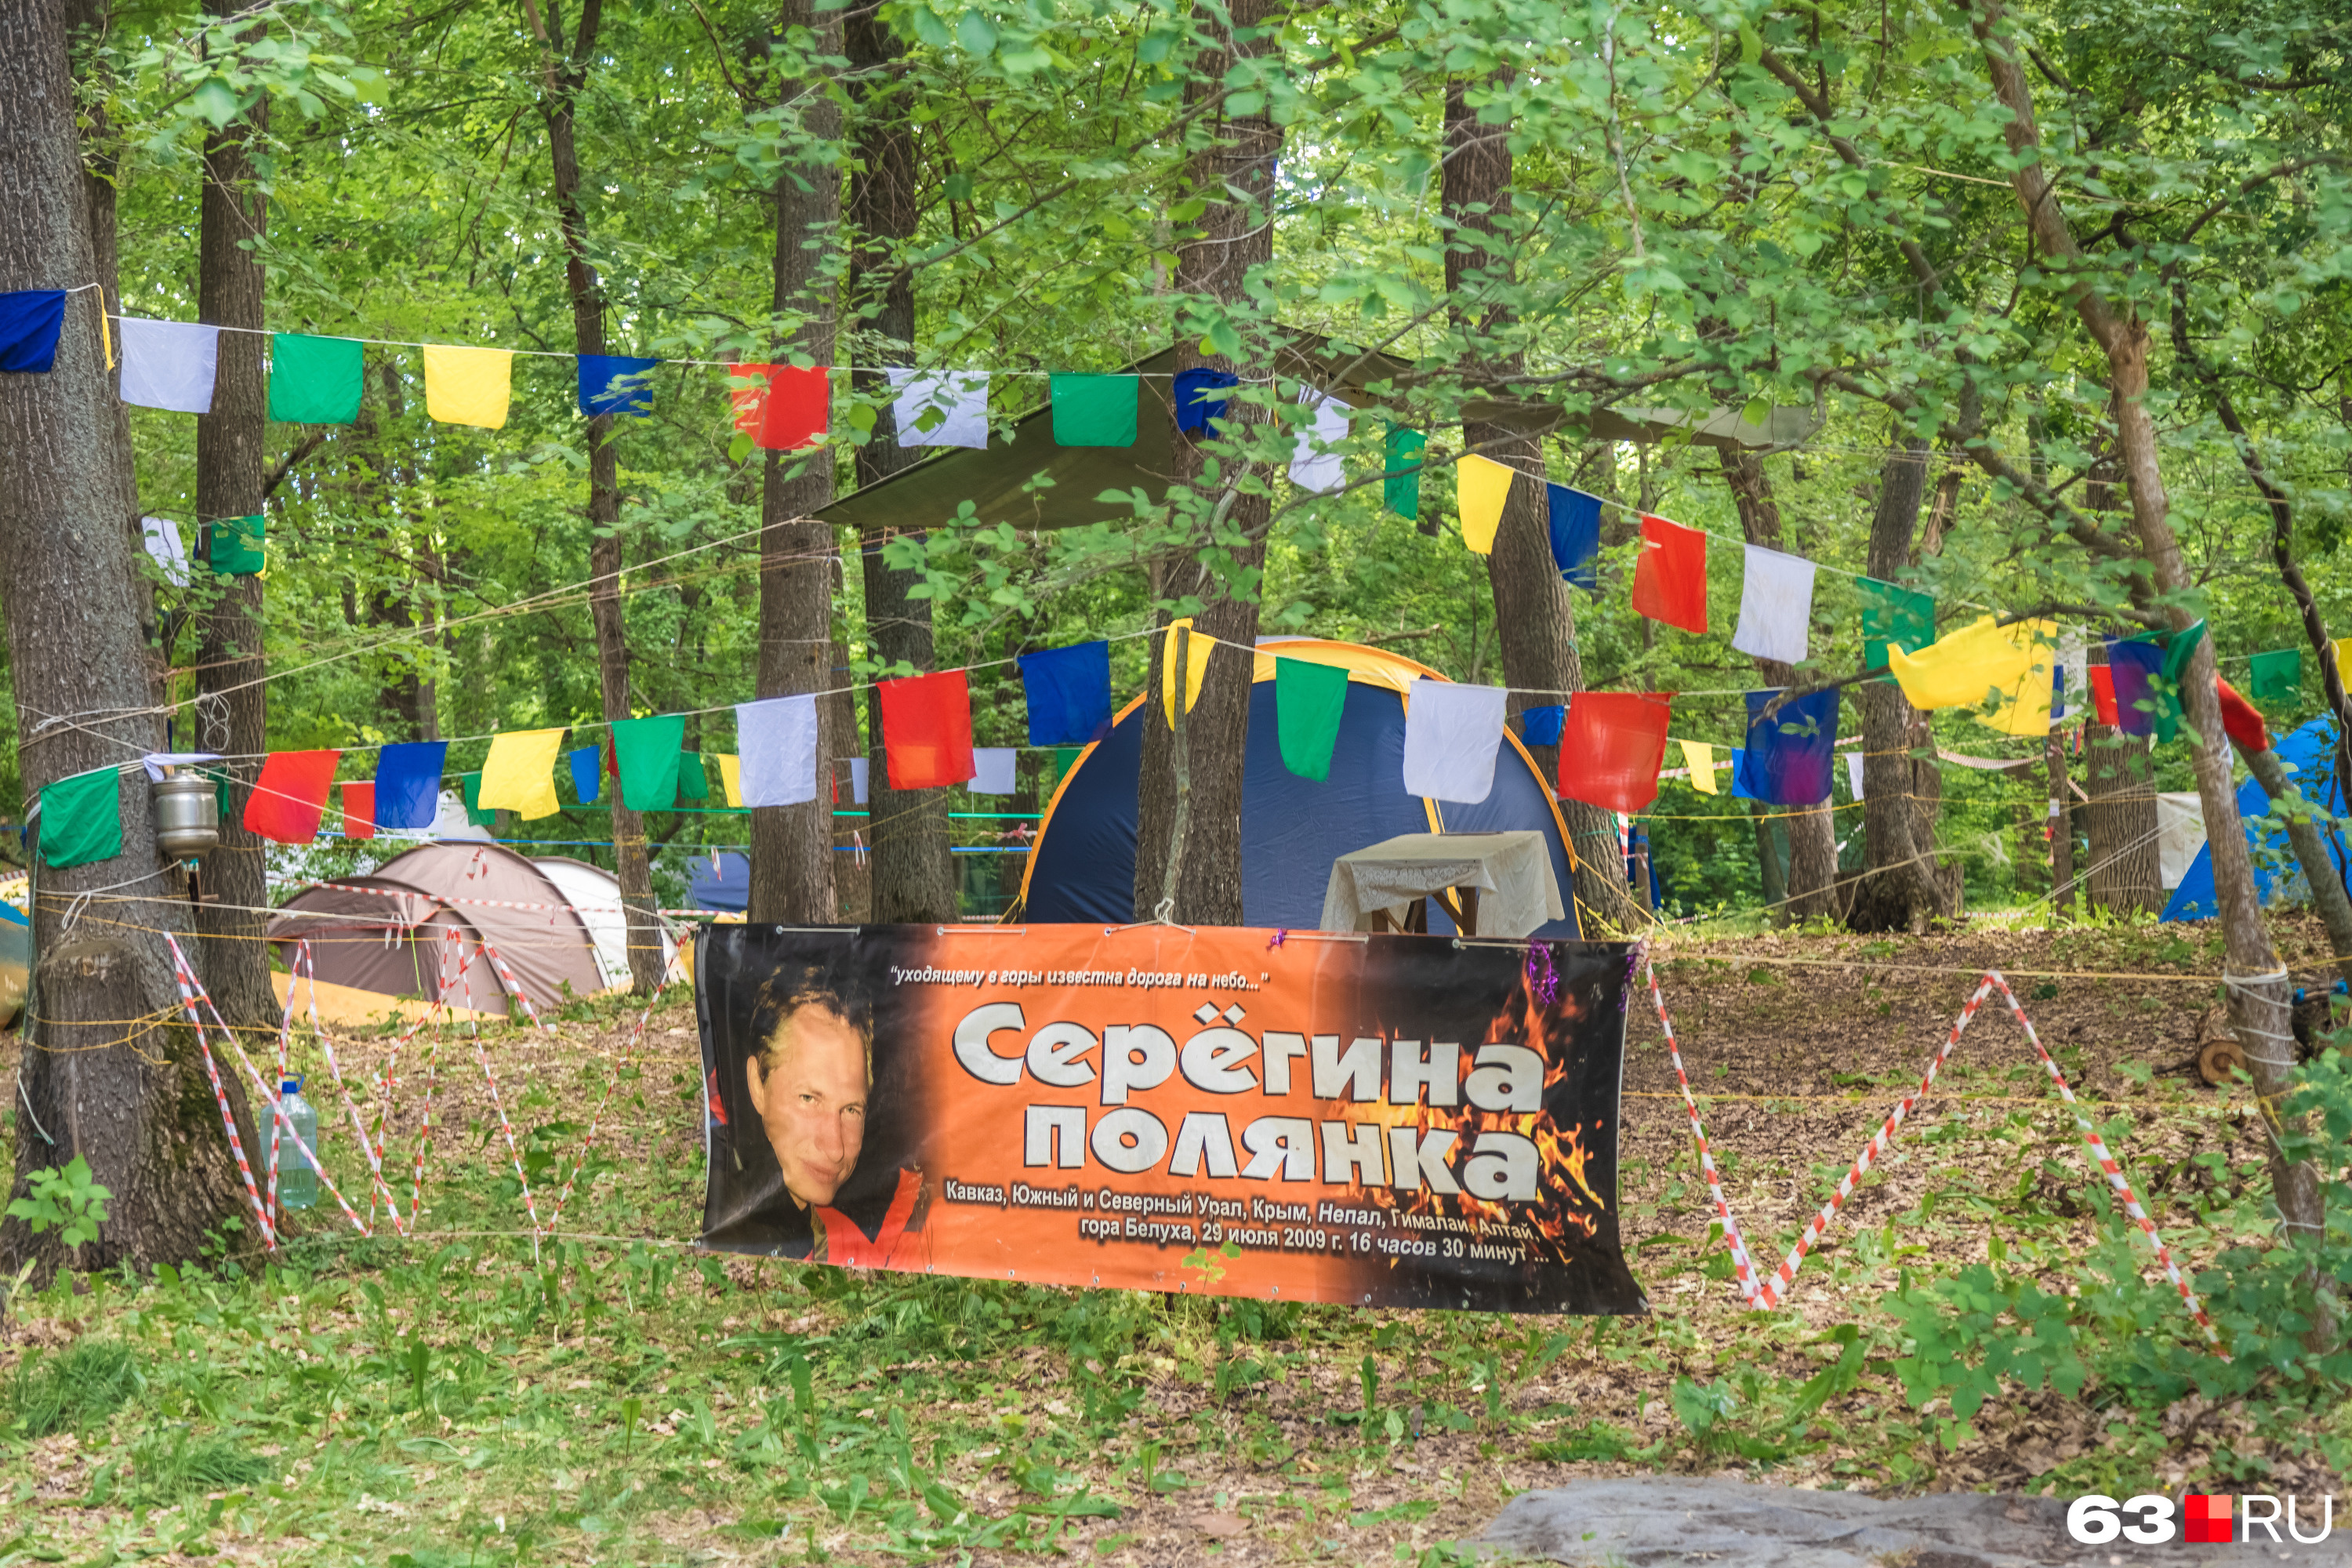 Некоторые гости фестиваля приезжают вместе и объединяются в лагерь